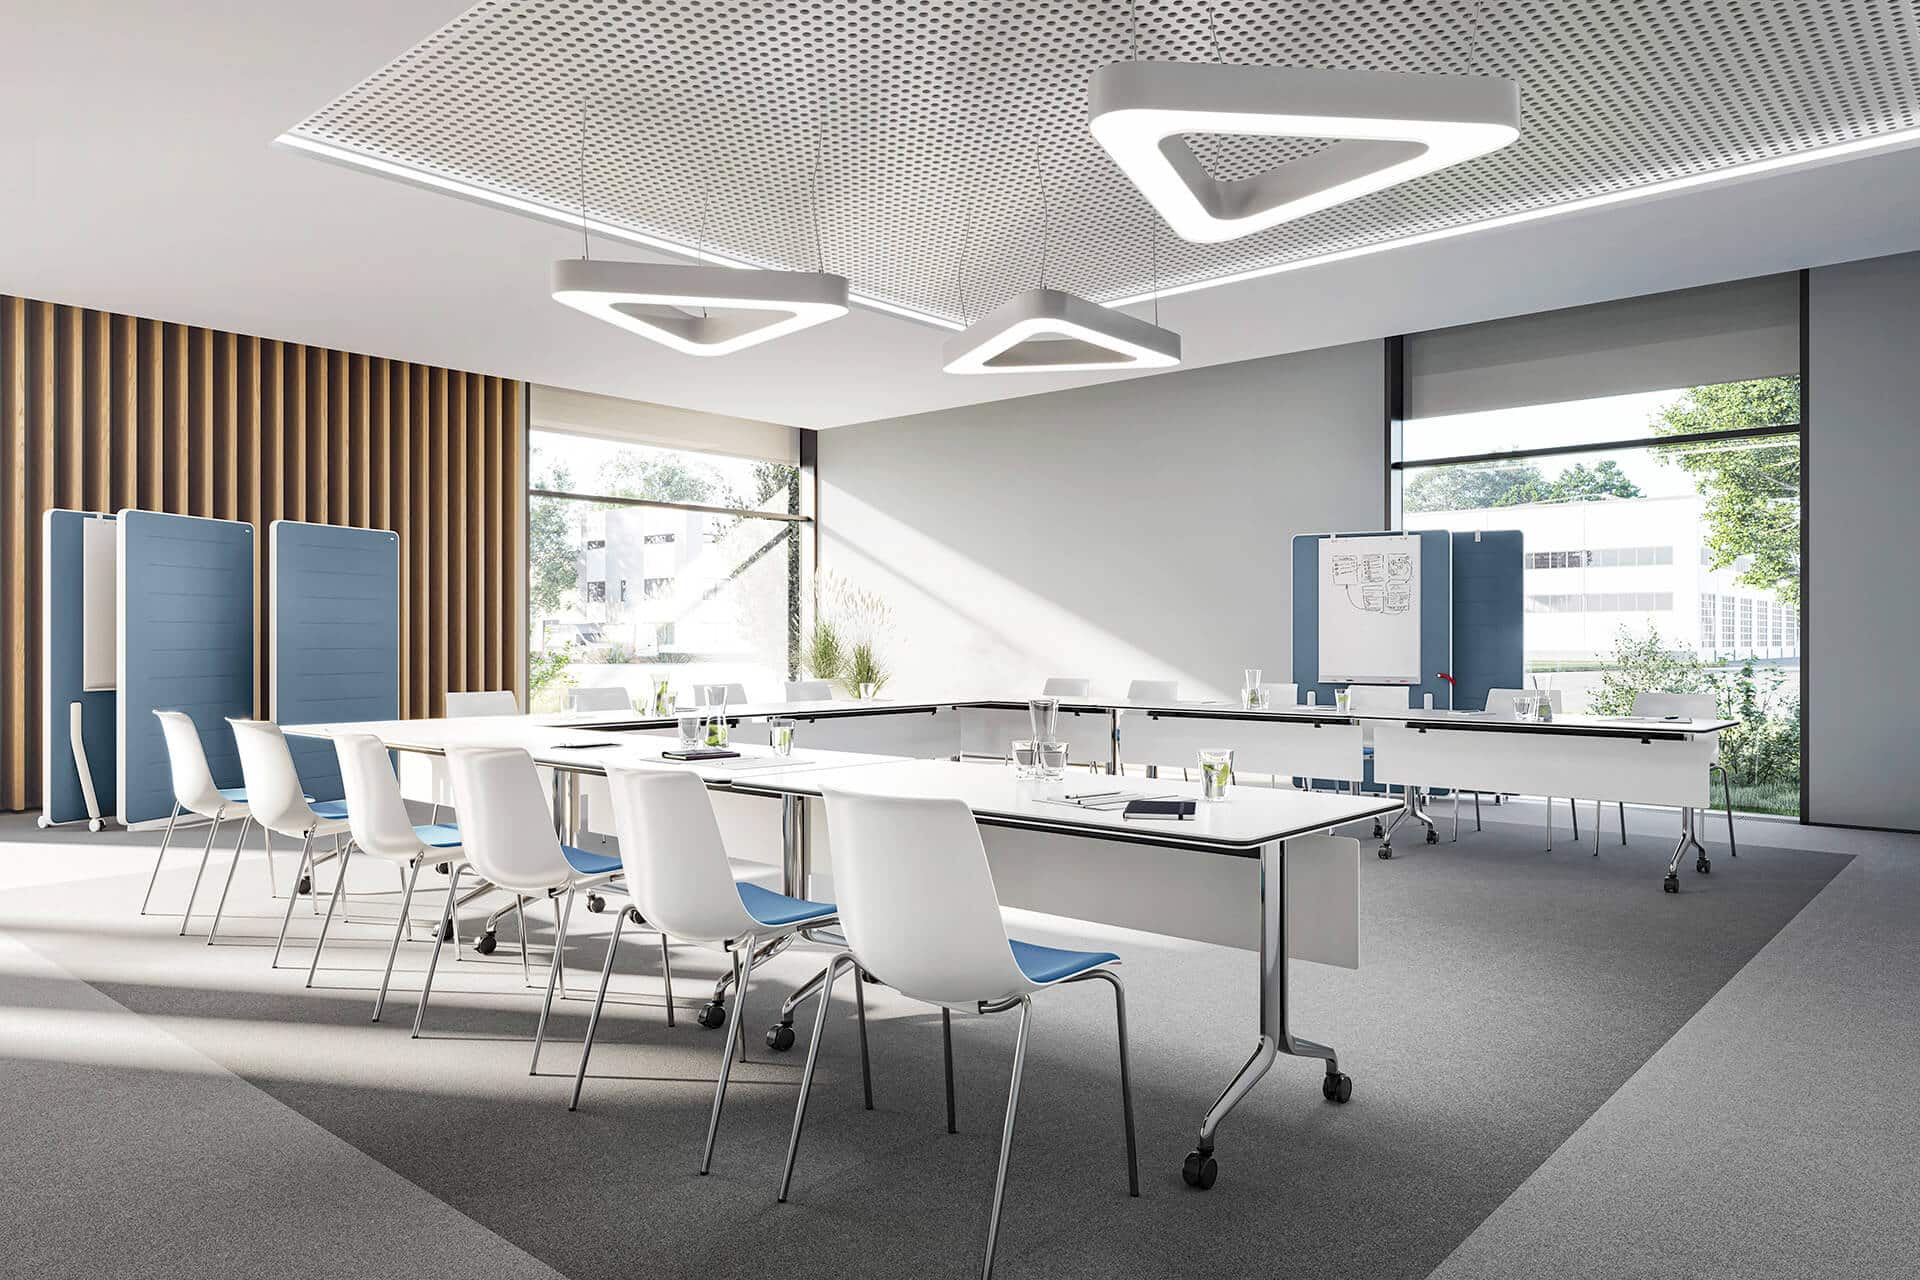 Konferenzraum mit U-förmigen Tischen und weiß-blauen Stühlen